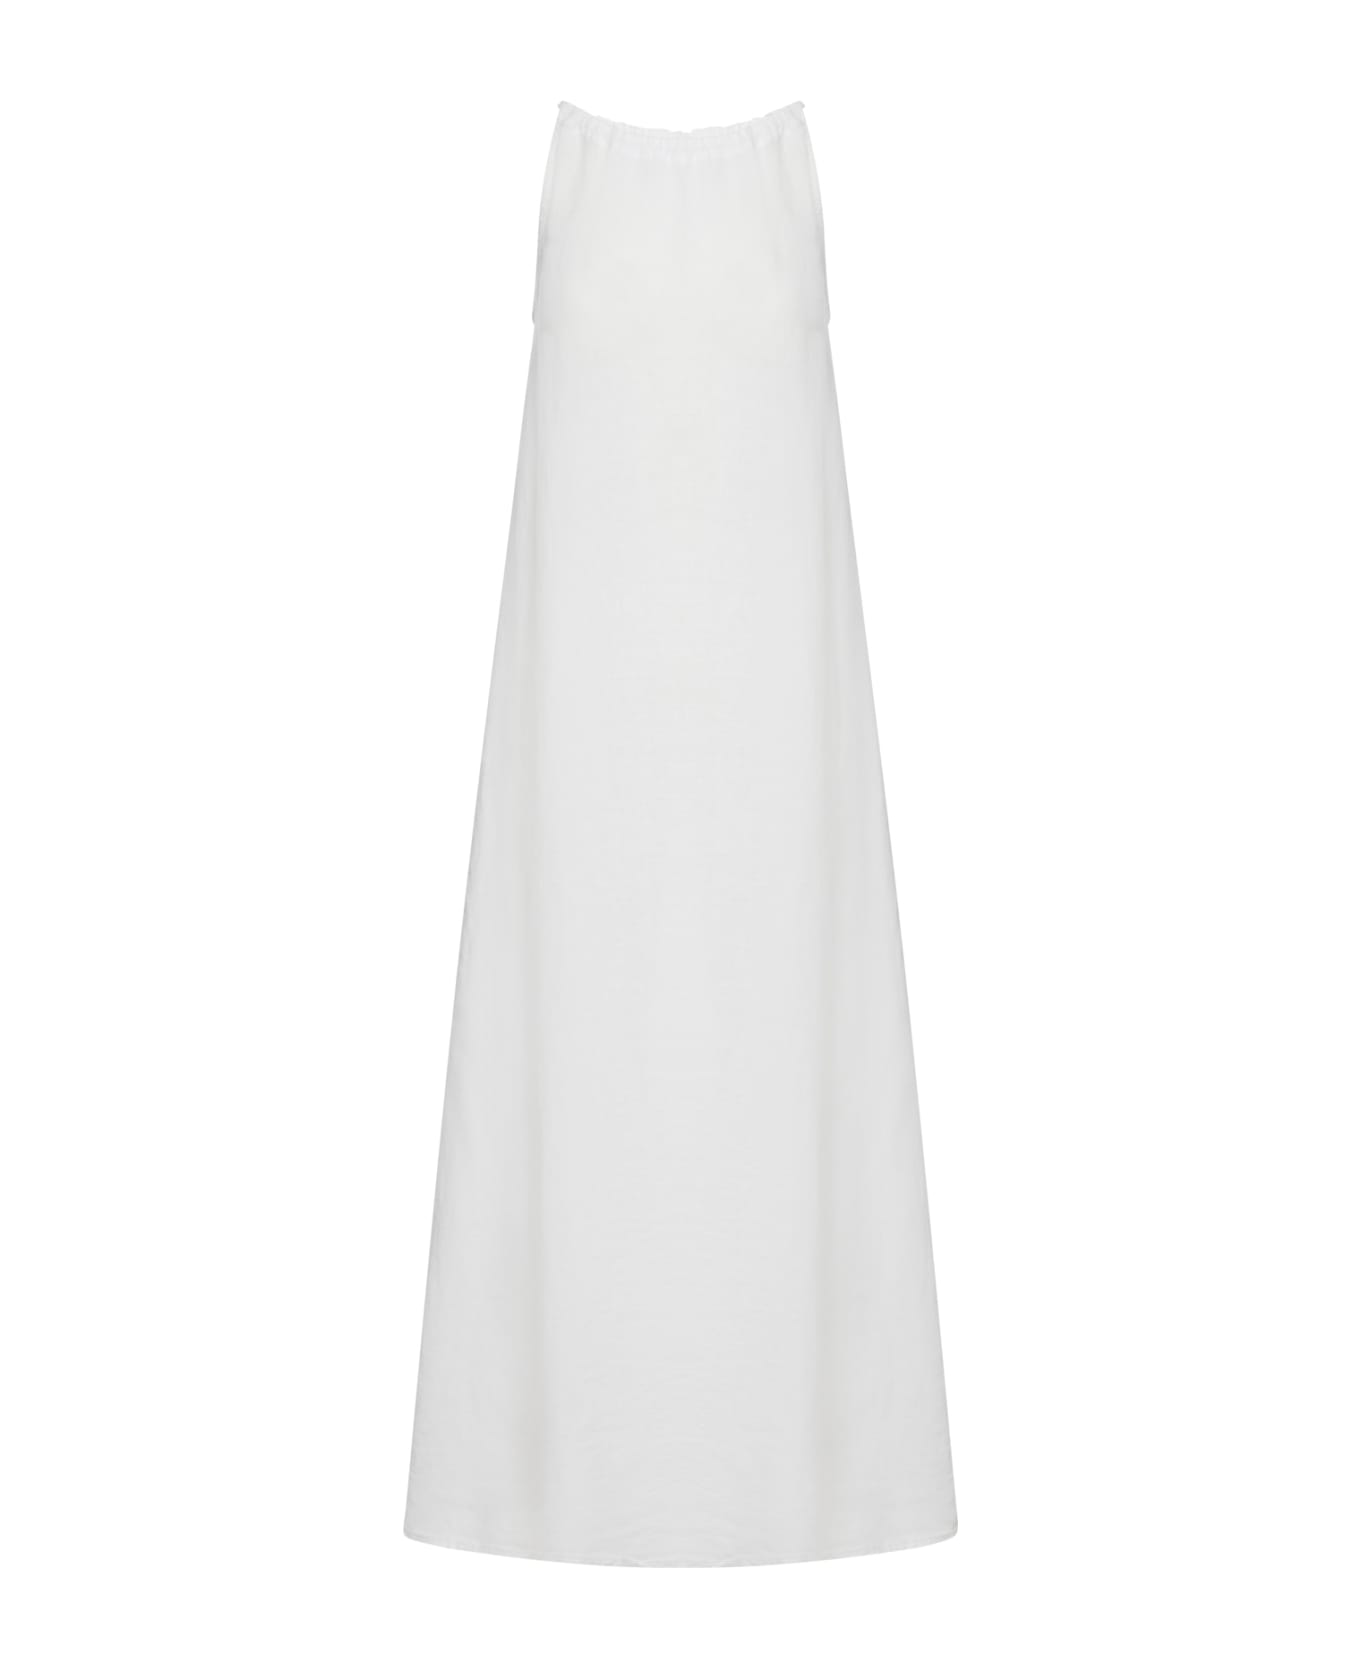 120% Lino Woman Dress - White